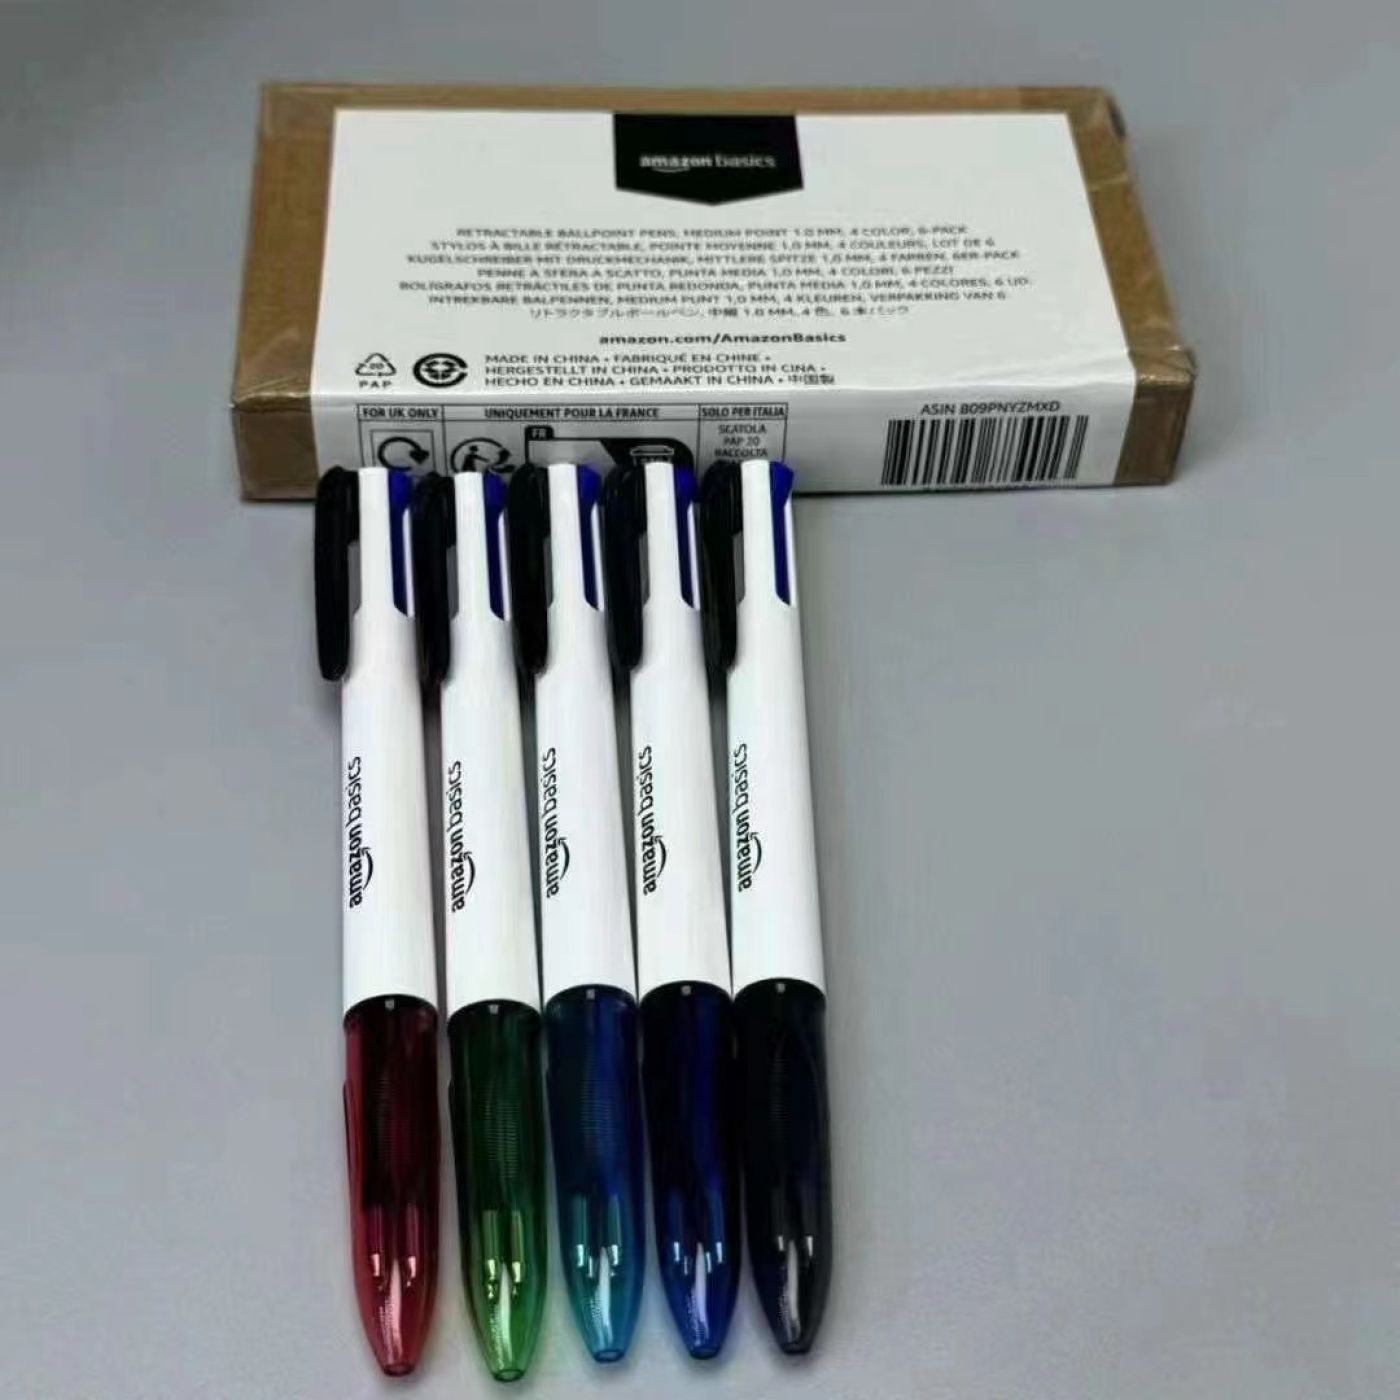 Hộp 6 chiếc Bút bi 4 màu trong 1 Amazon Basics ( Mỹ ) B09PNYZMXD